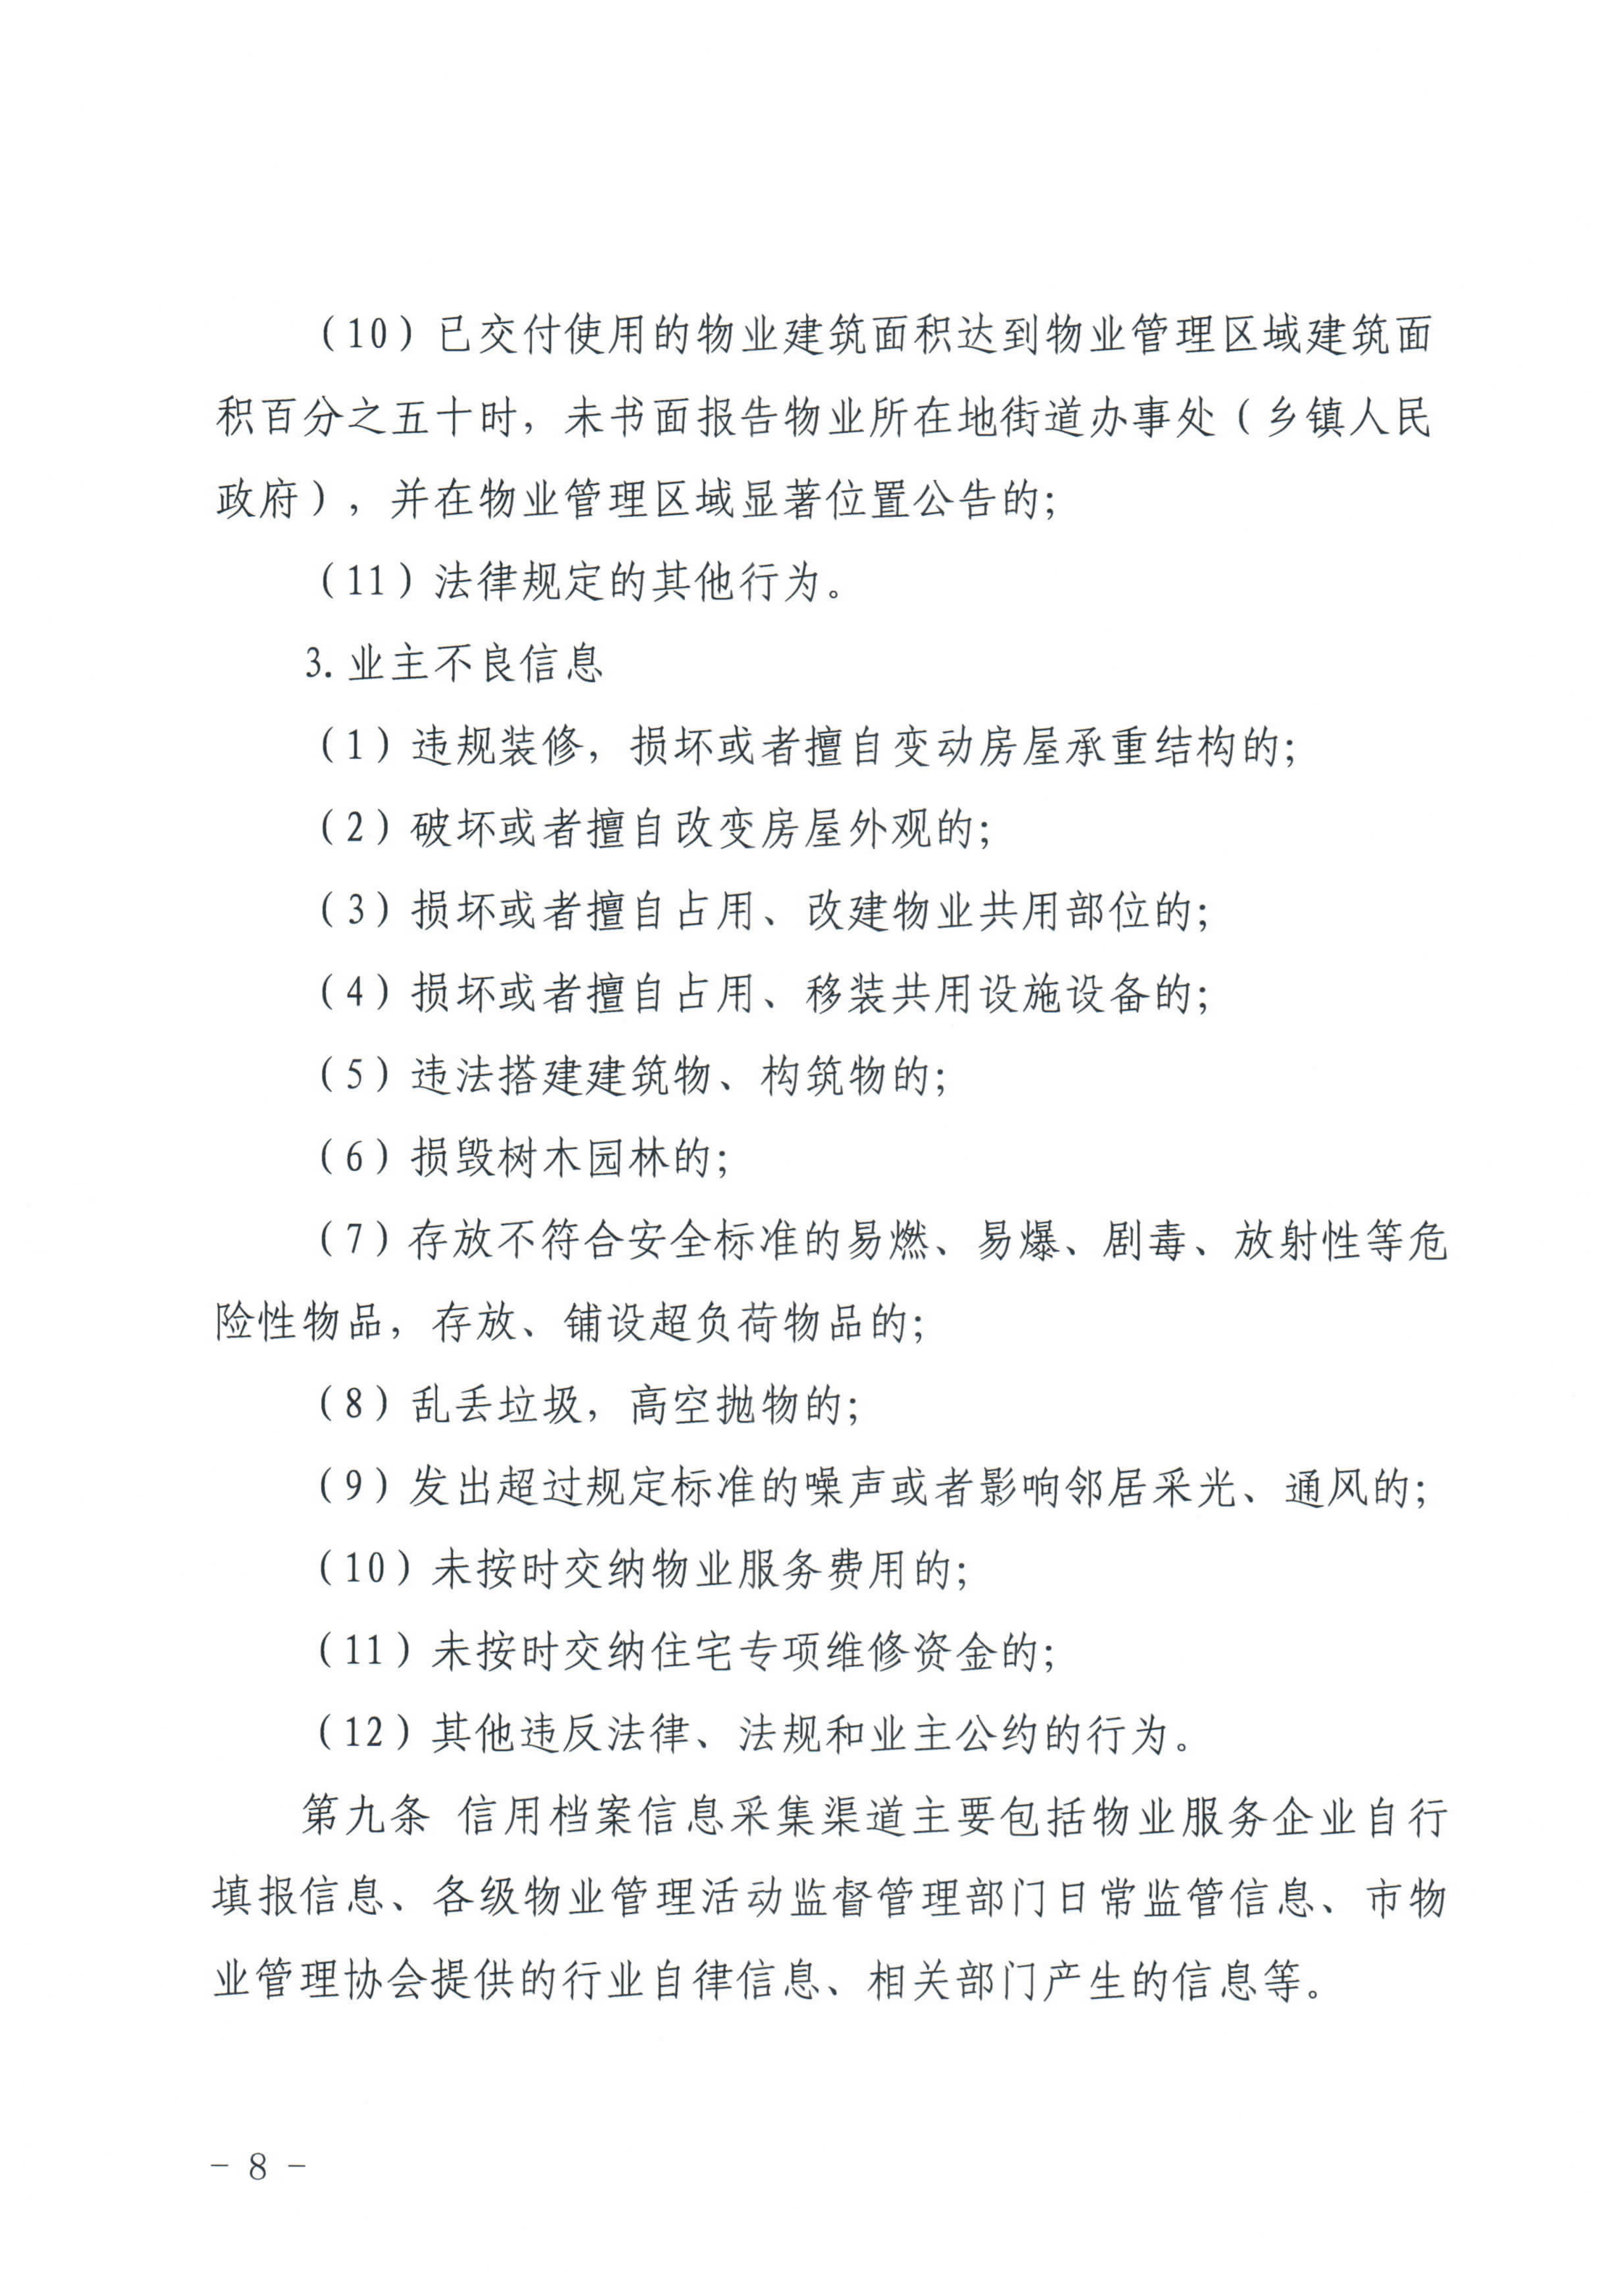 惠州市物业管理协会关于印发《惠州市物业管理活动信用档案管理办法》的通知_8.jpg